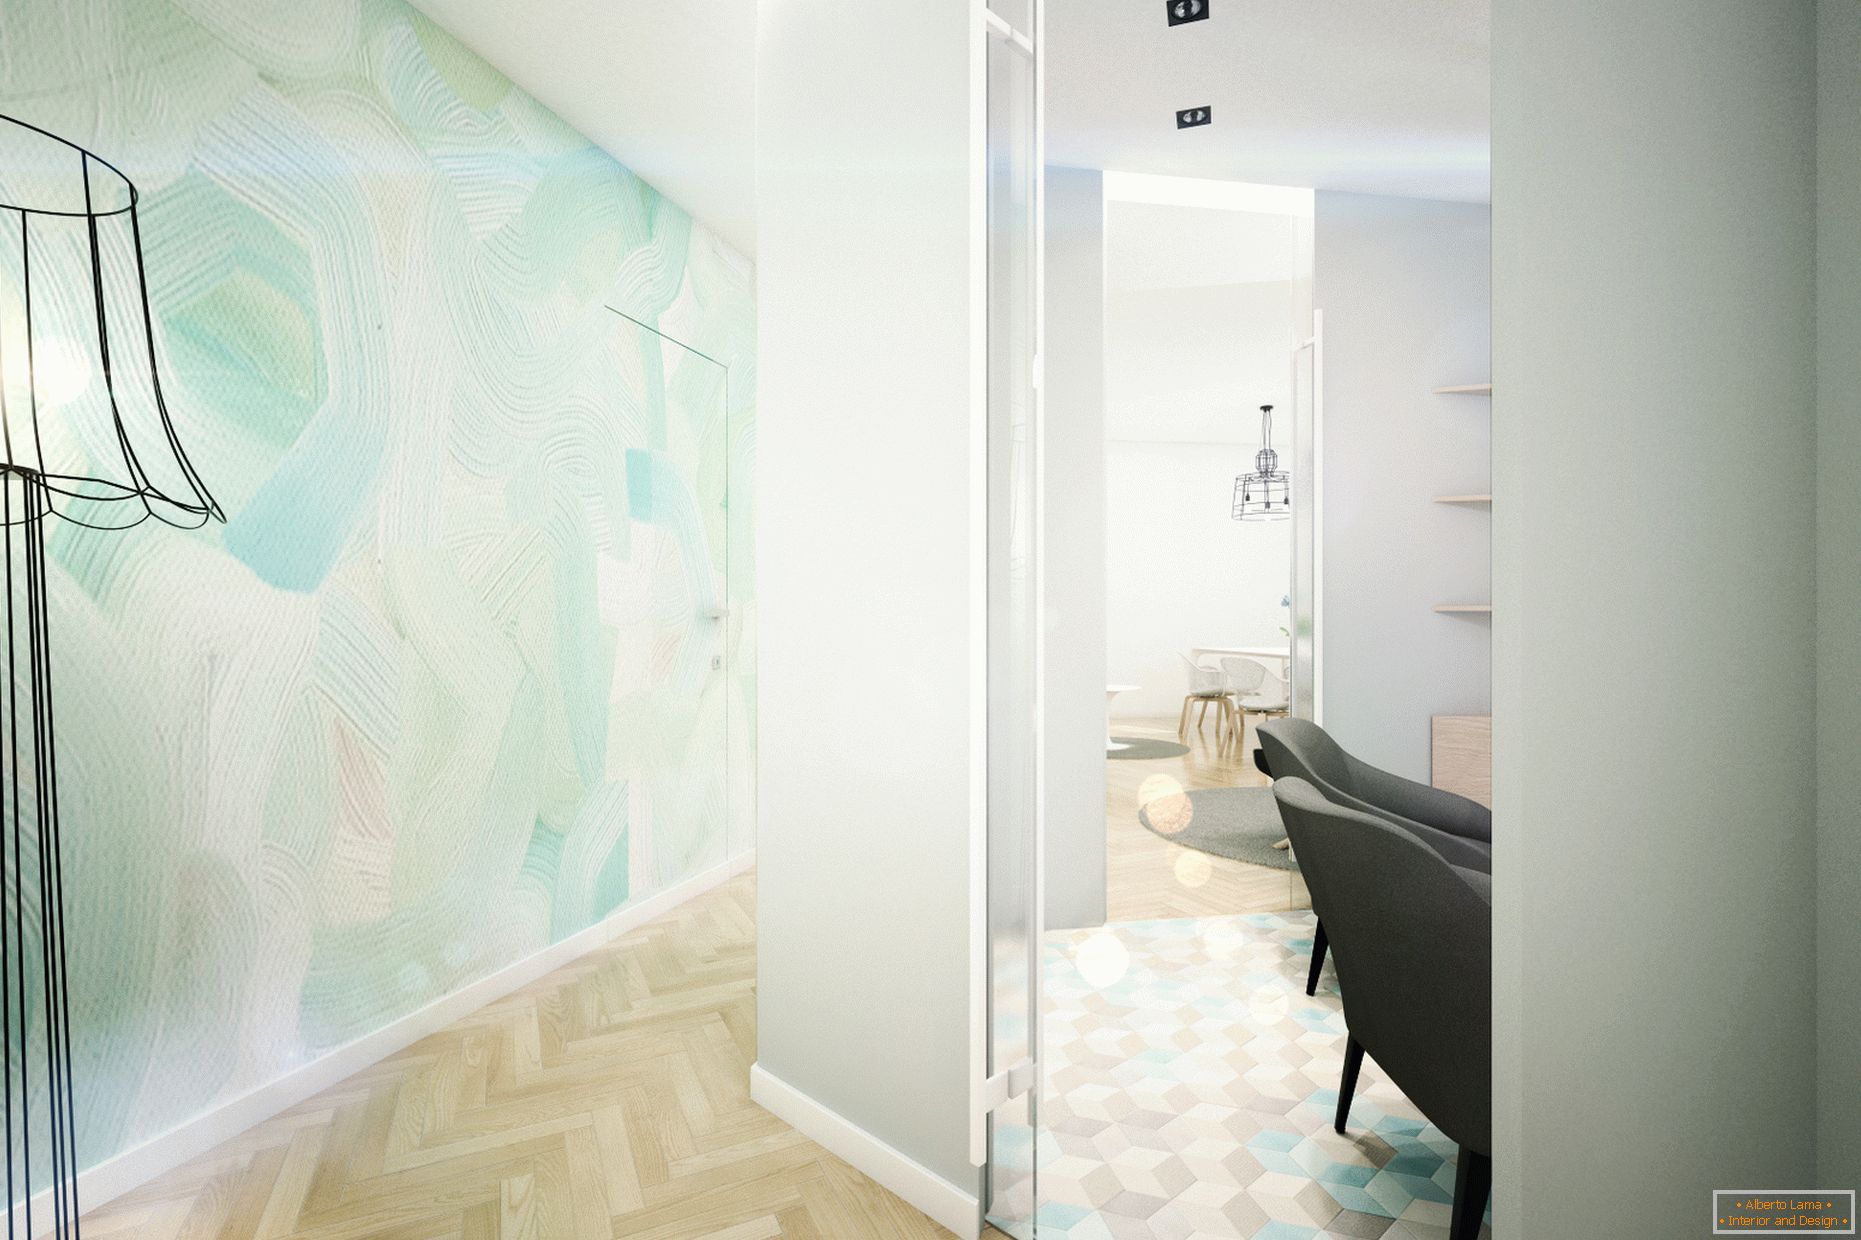 Moderni dizajnerski apartman u pastelnim bojama